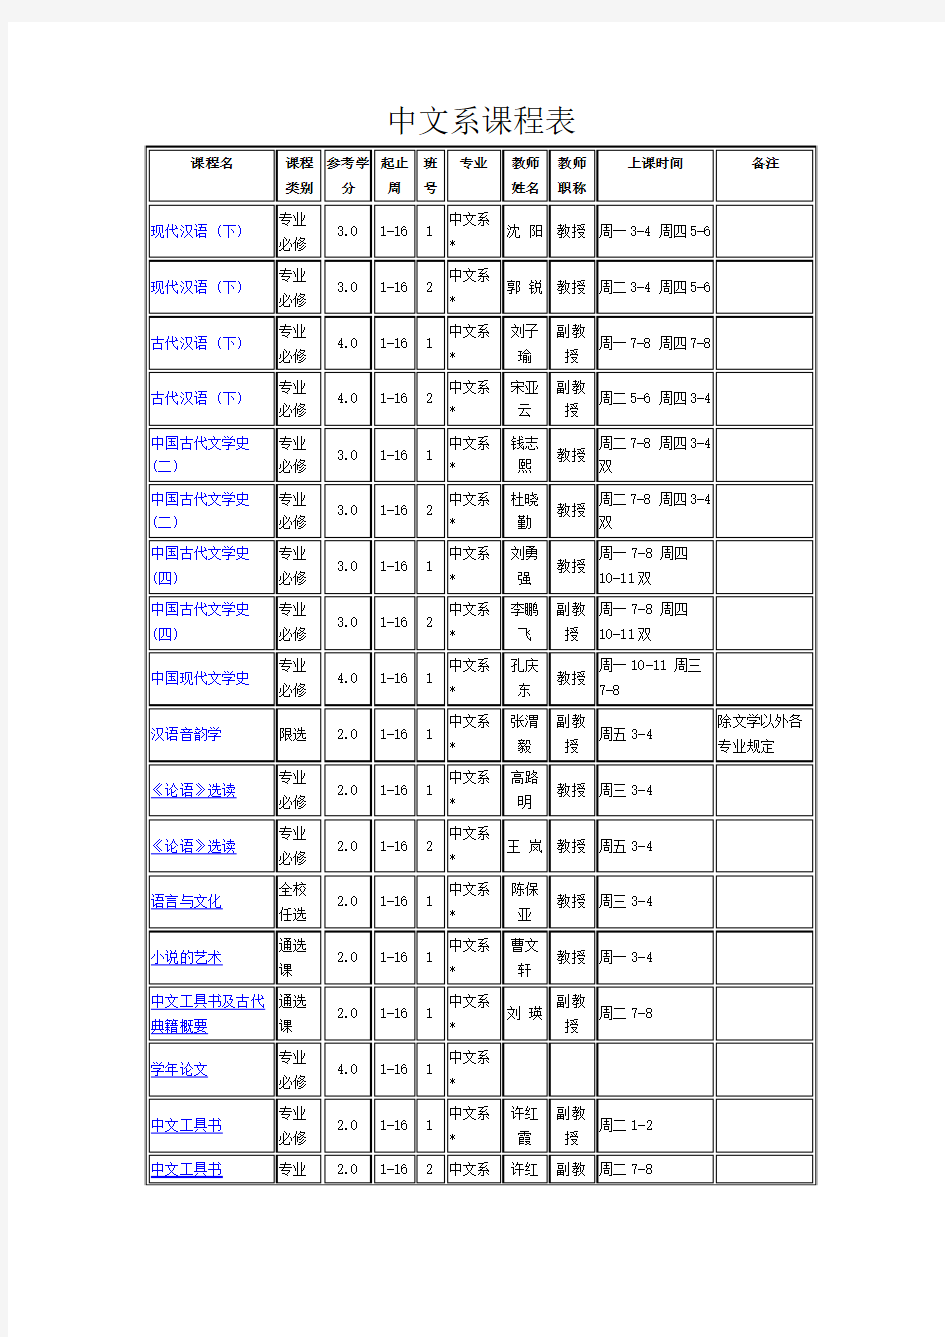 中文系课程表